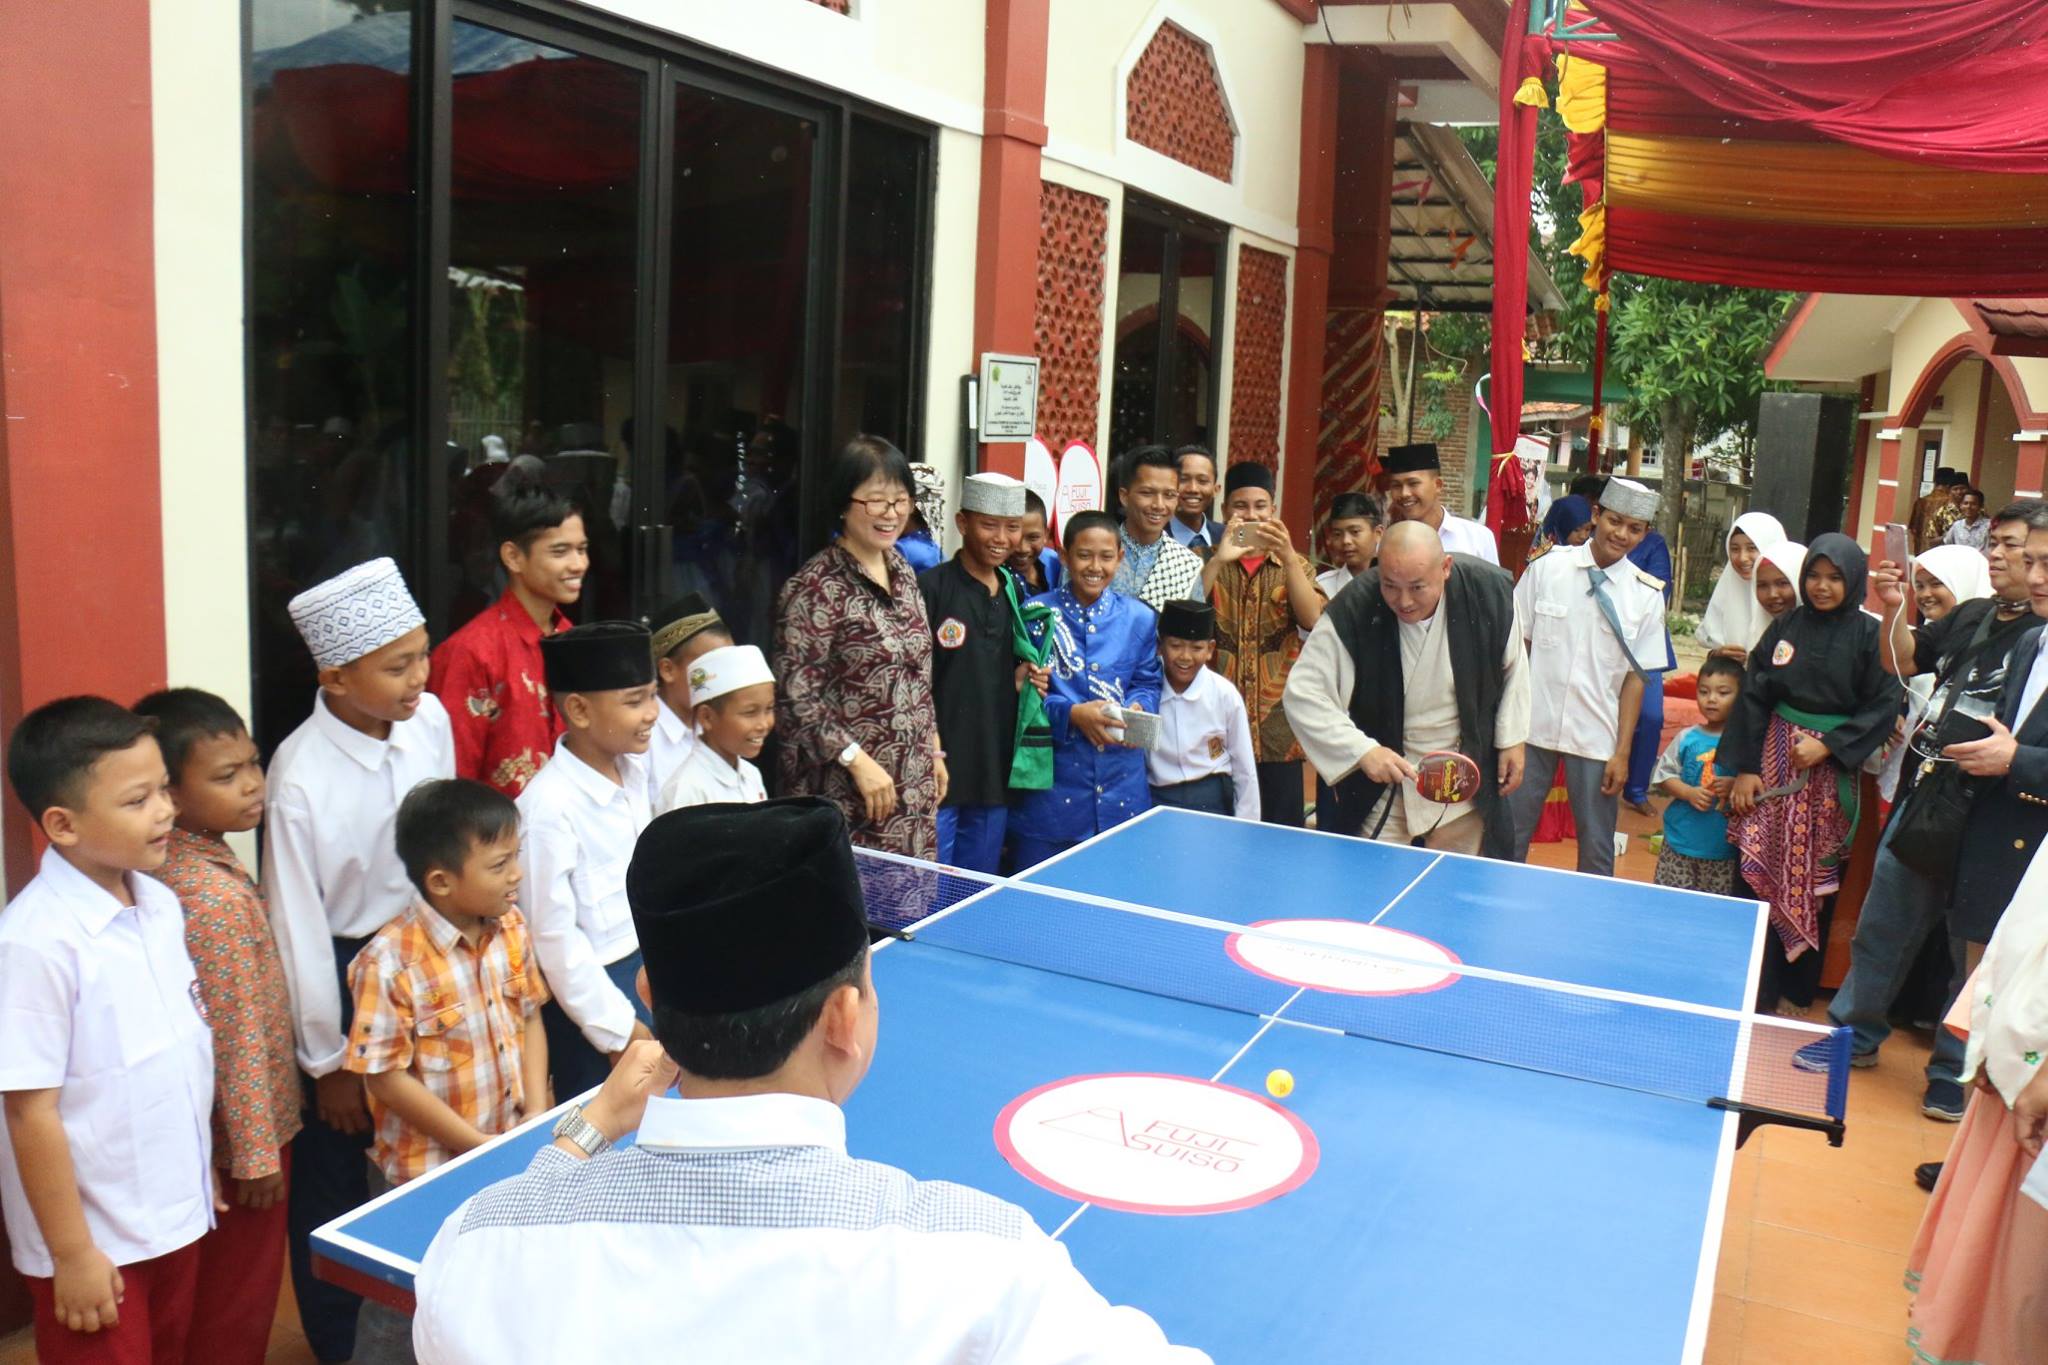 CEO Kawabata plays ping pong with students